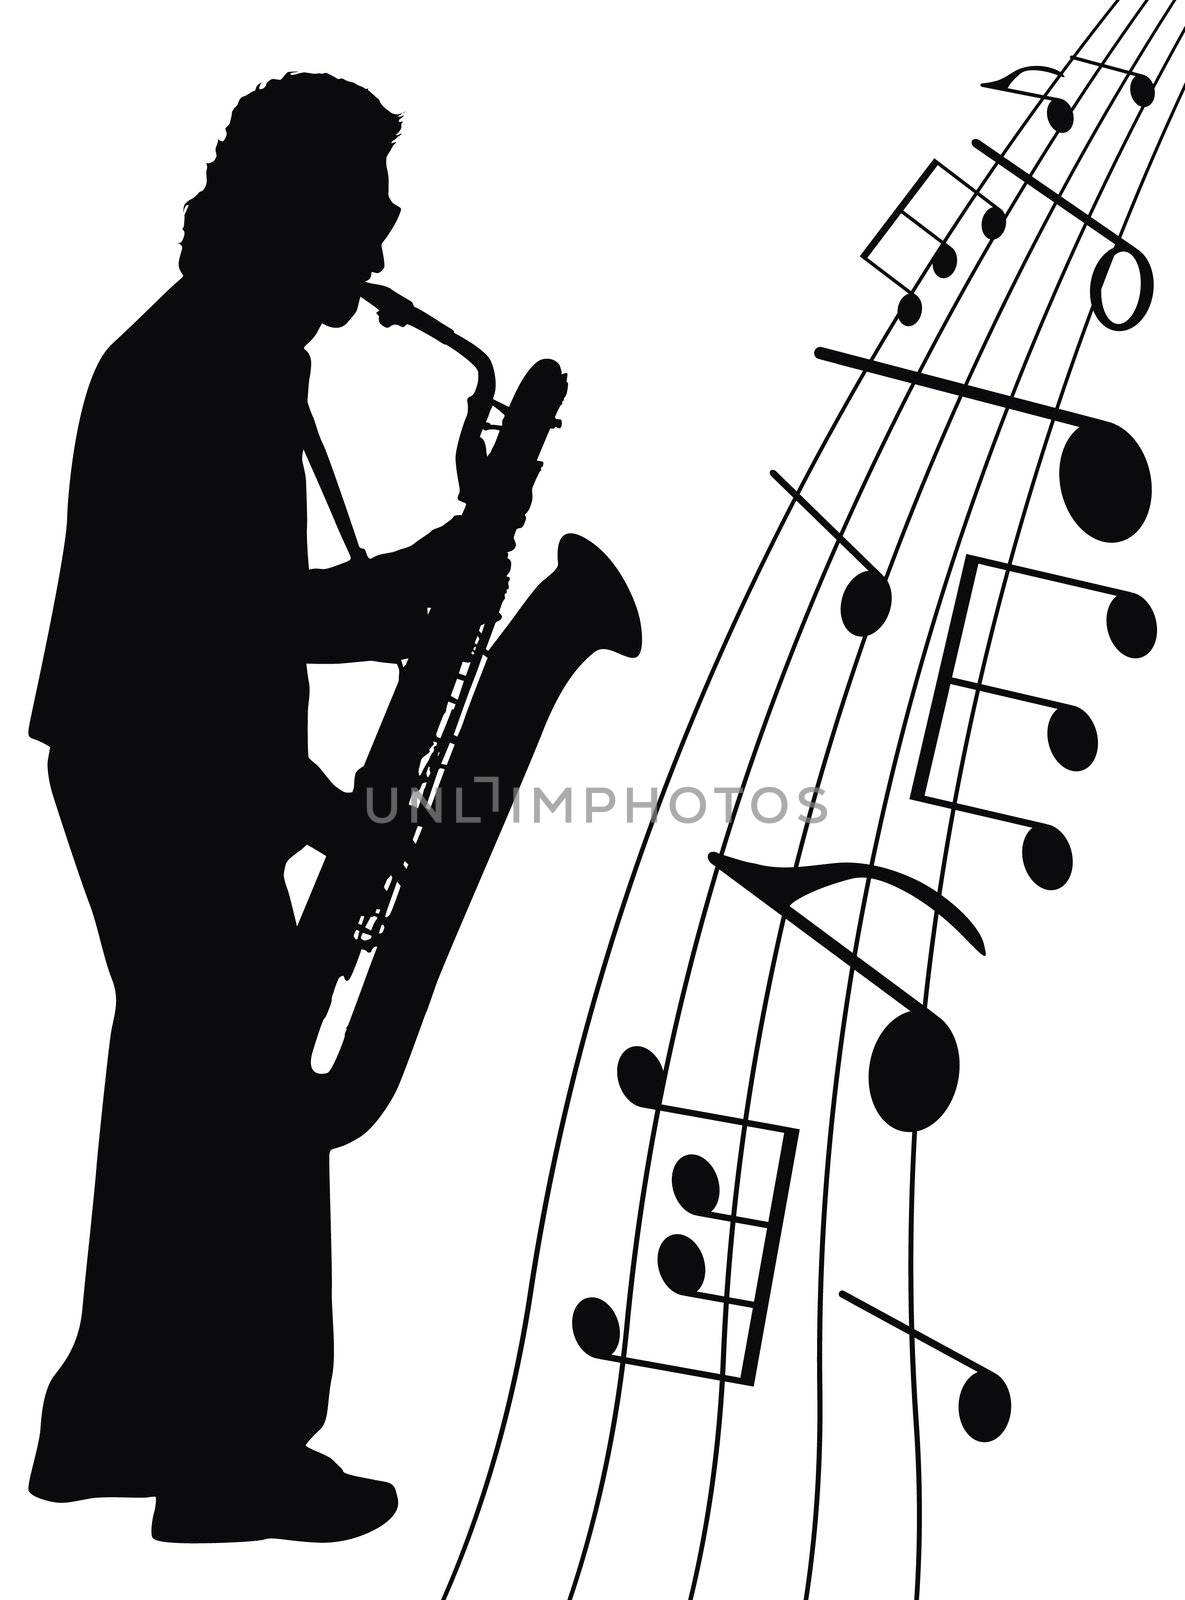 Jazz for sax by Kuzma